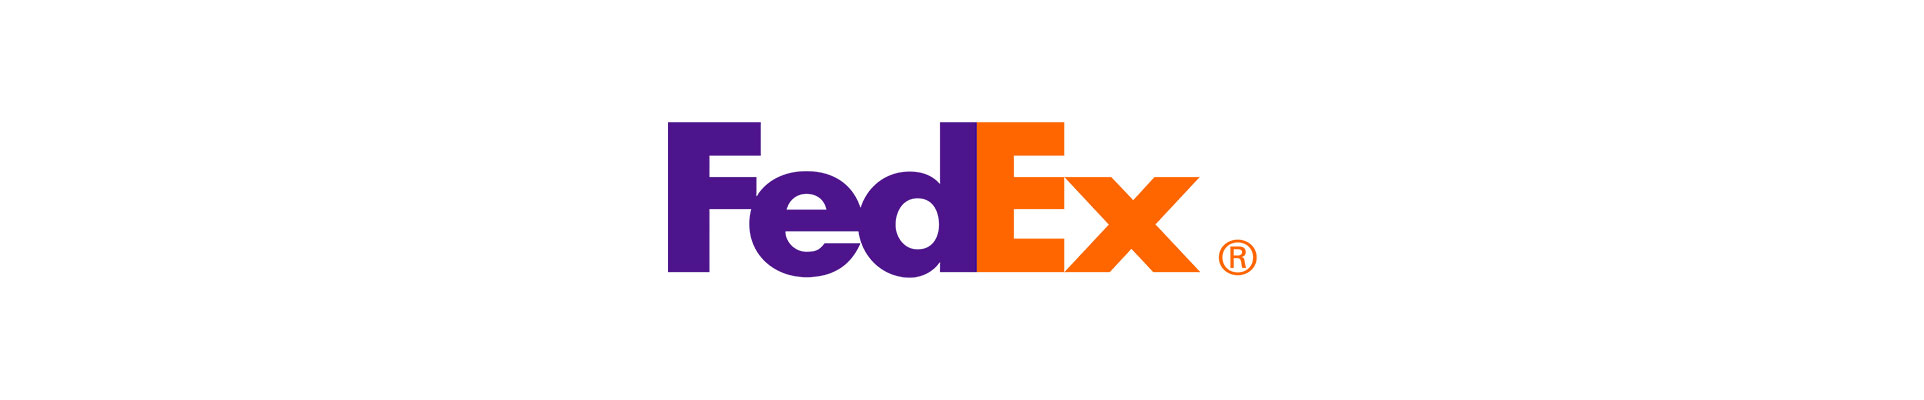 Il logotipo FedEx